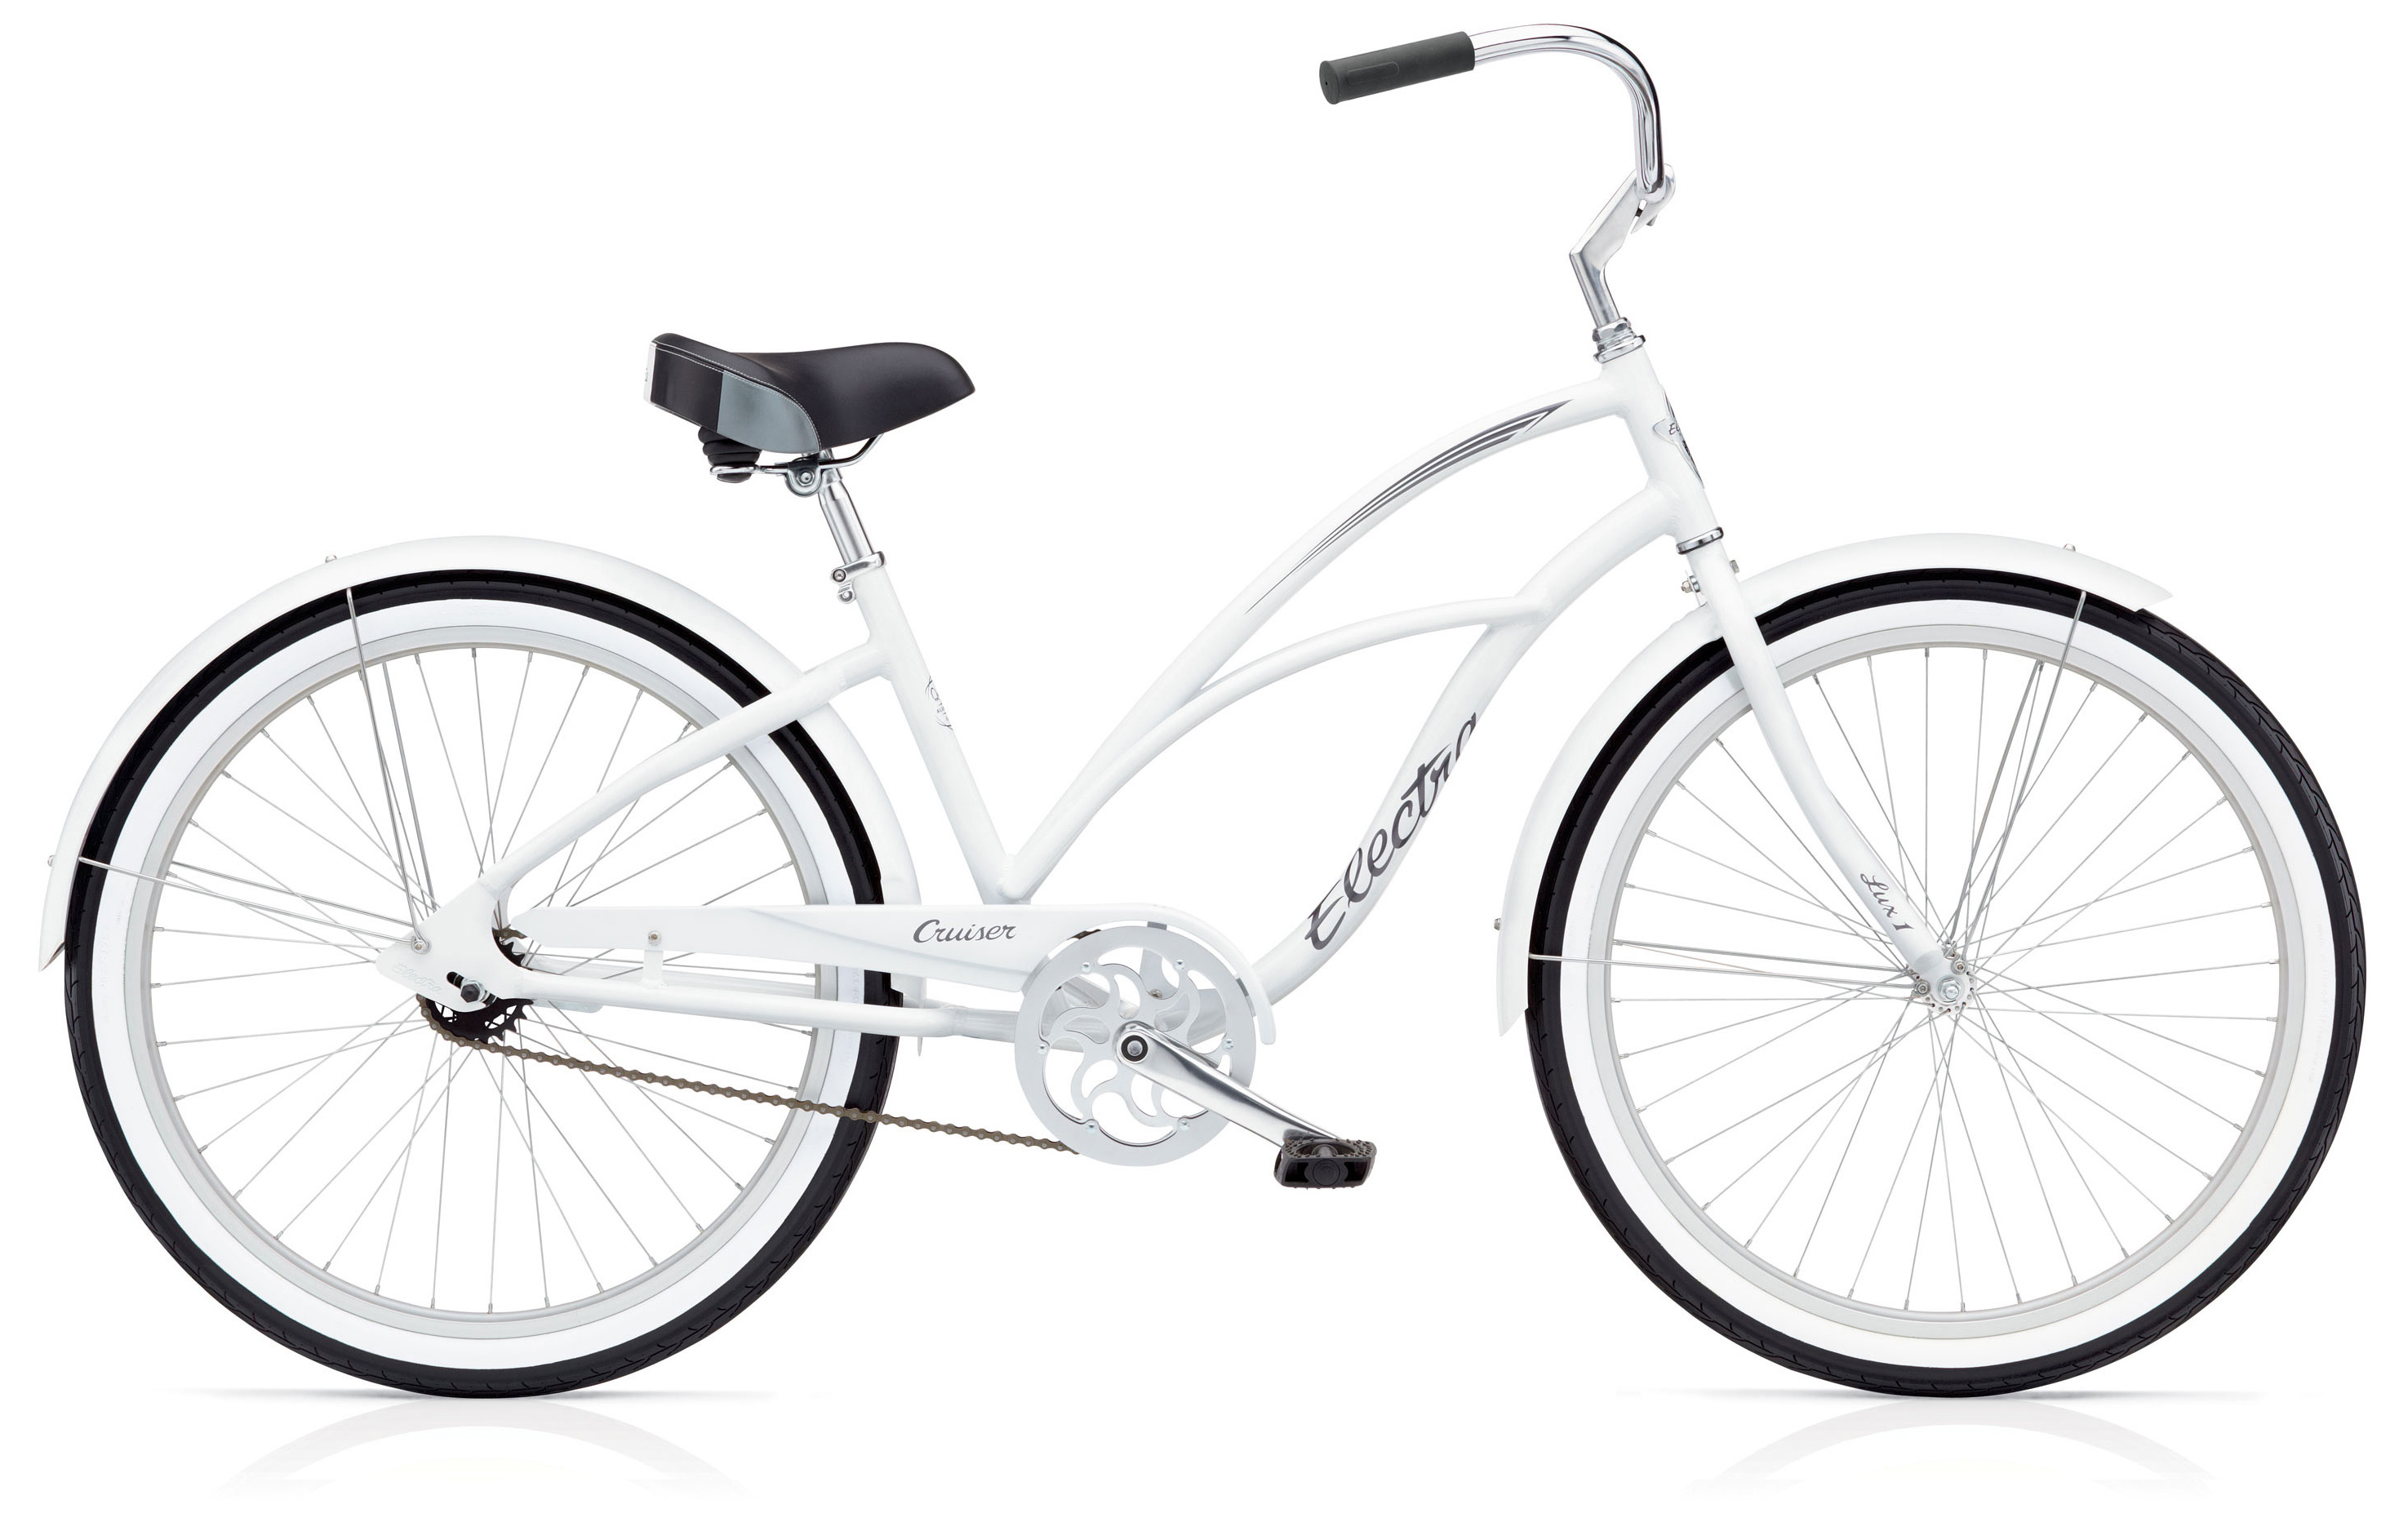  Отзывы о Подростковом велосипеде Electra Cruiser Lux 3i '24 2019